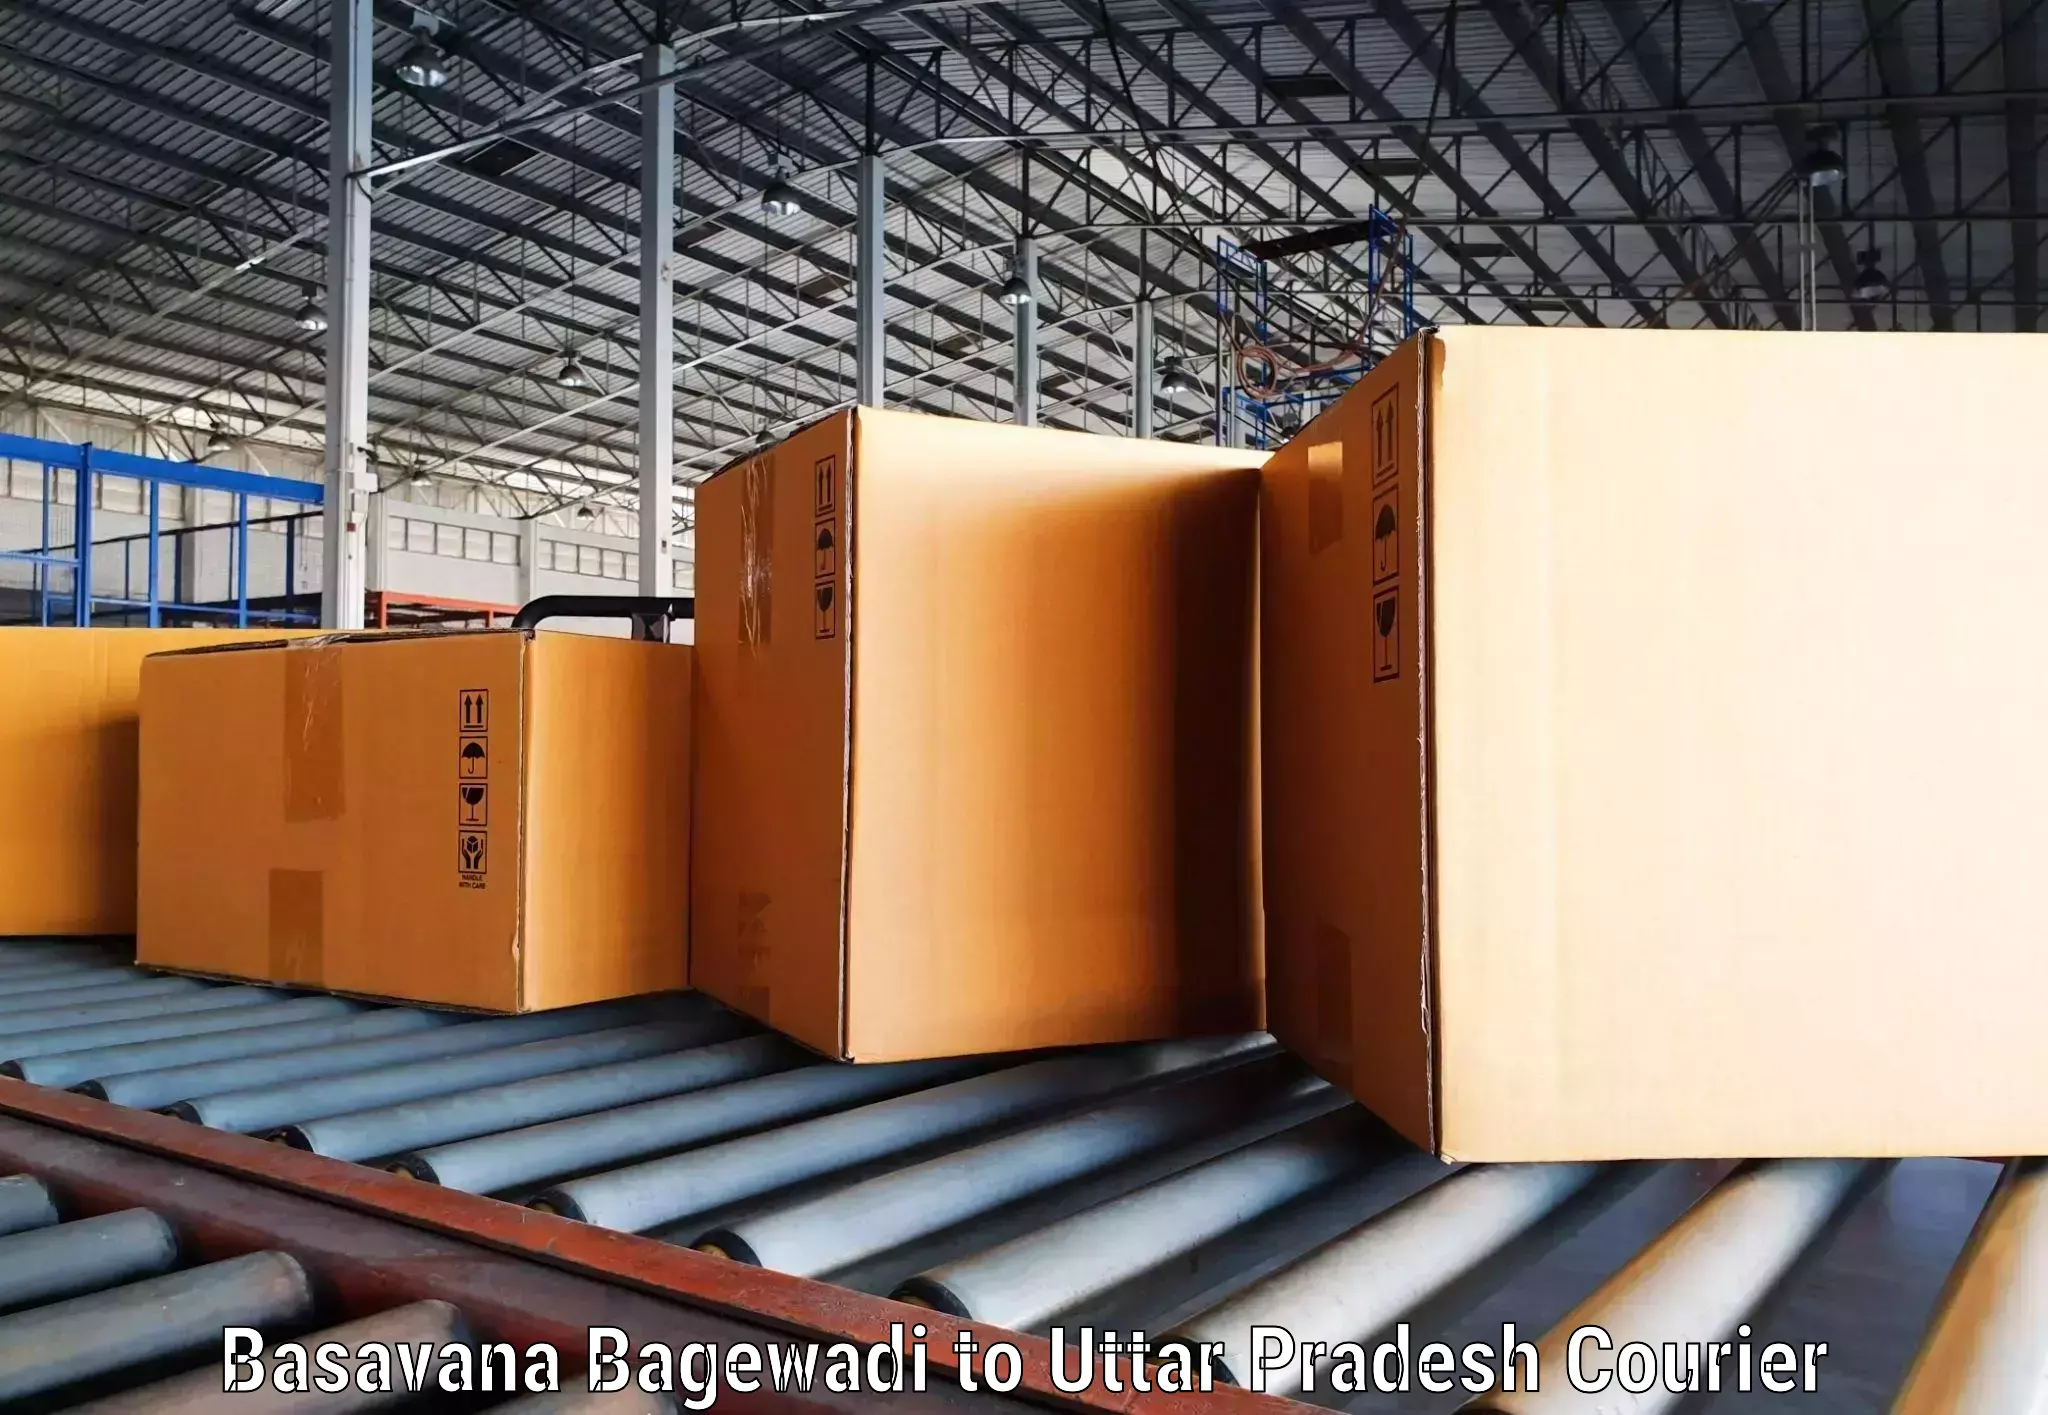 Individual parcel service Basavana Bagewadi to Pukhrayan